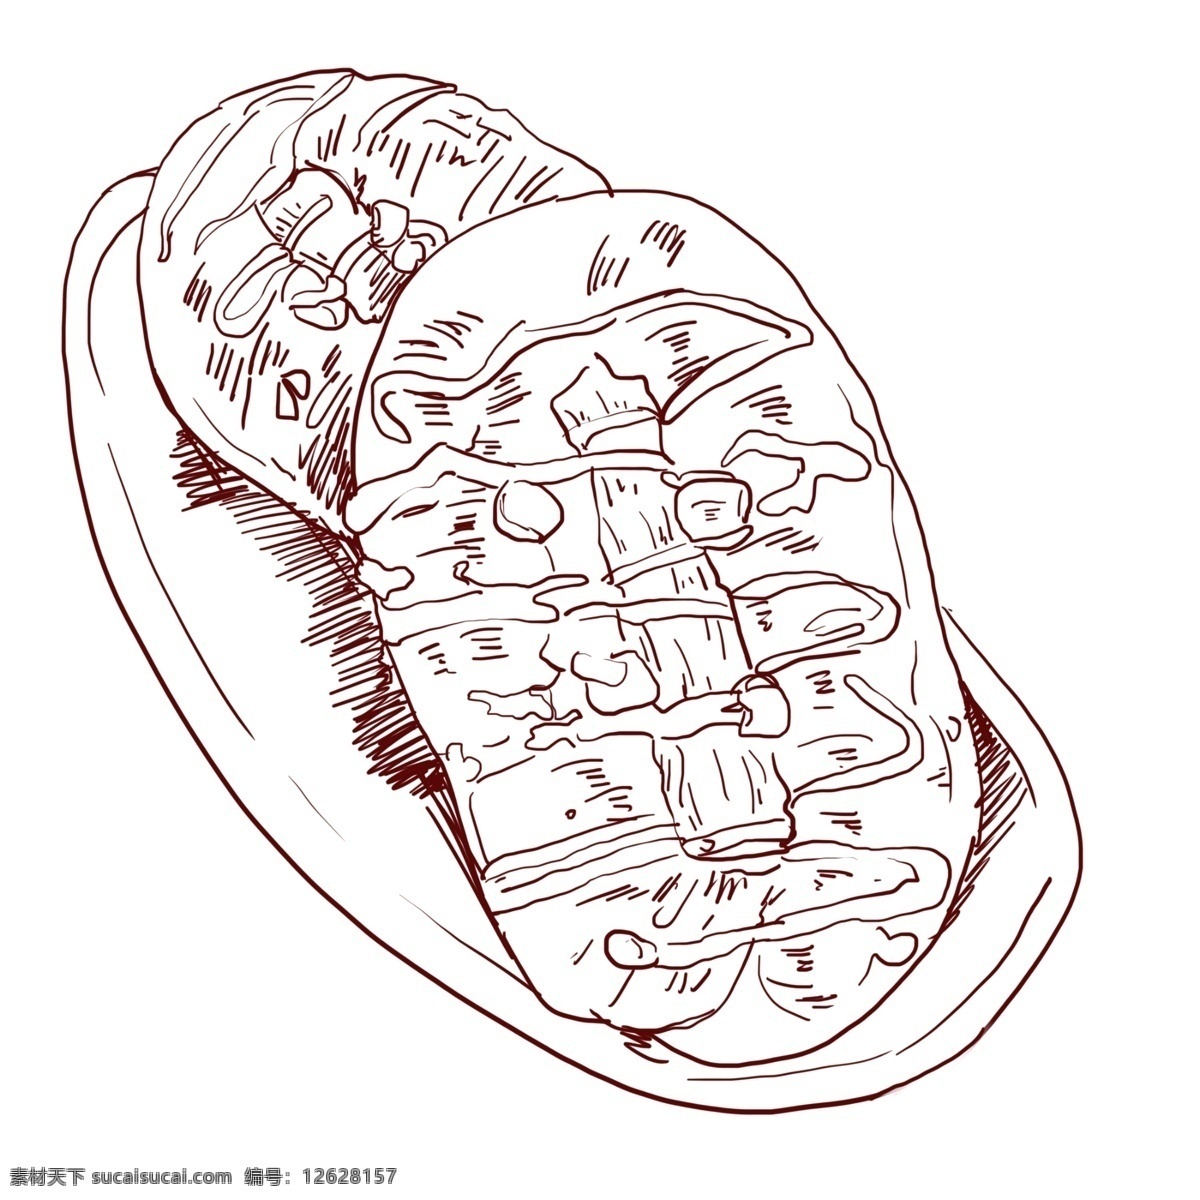 线描 食物 热狗 插画 美味的面包 可口的热狗 卡通插画 手绘美食插画 线描食物插画 美食